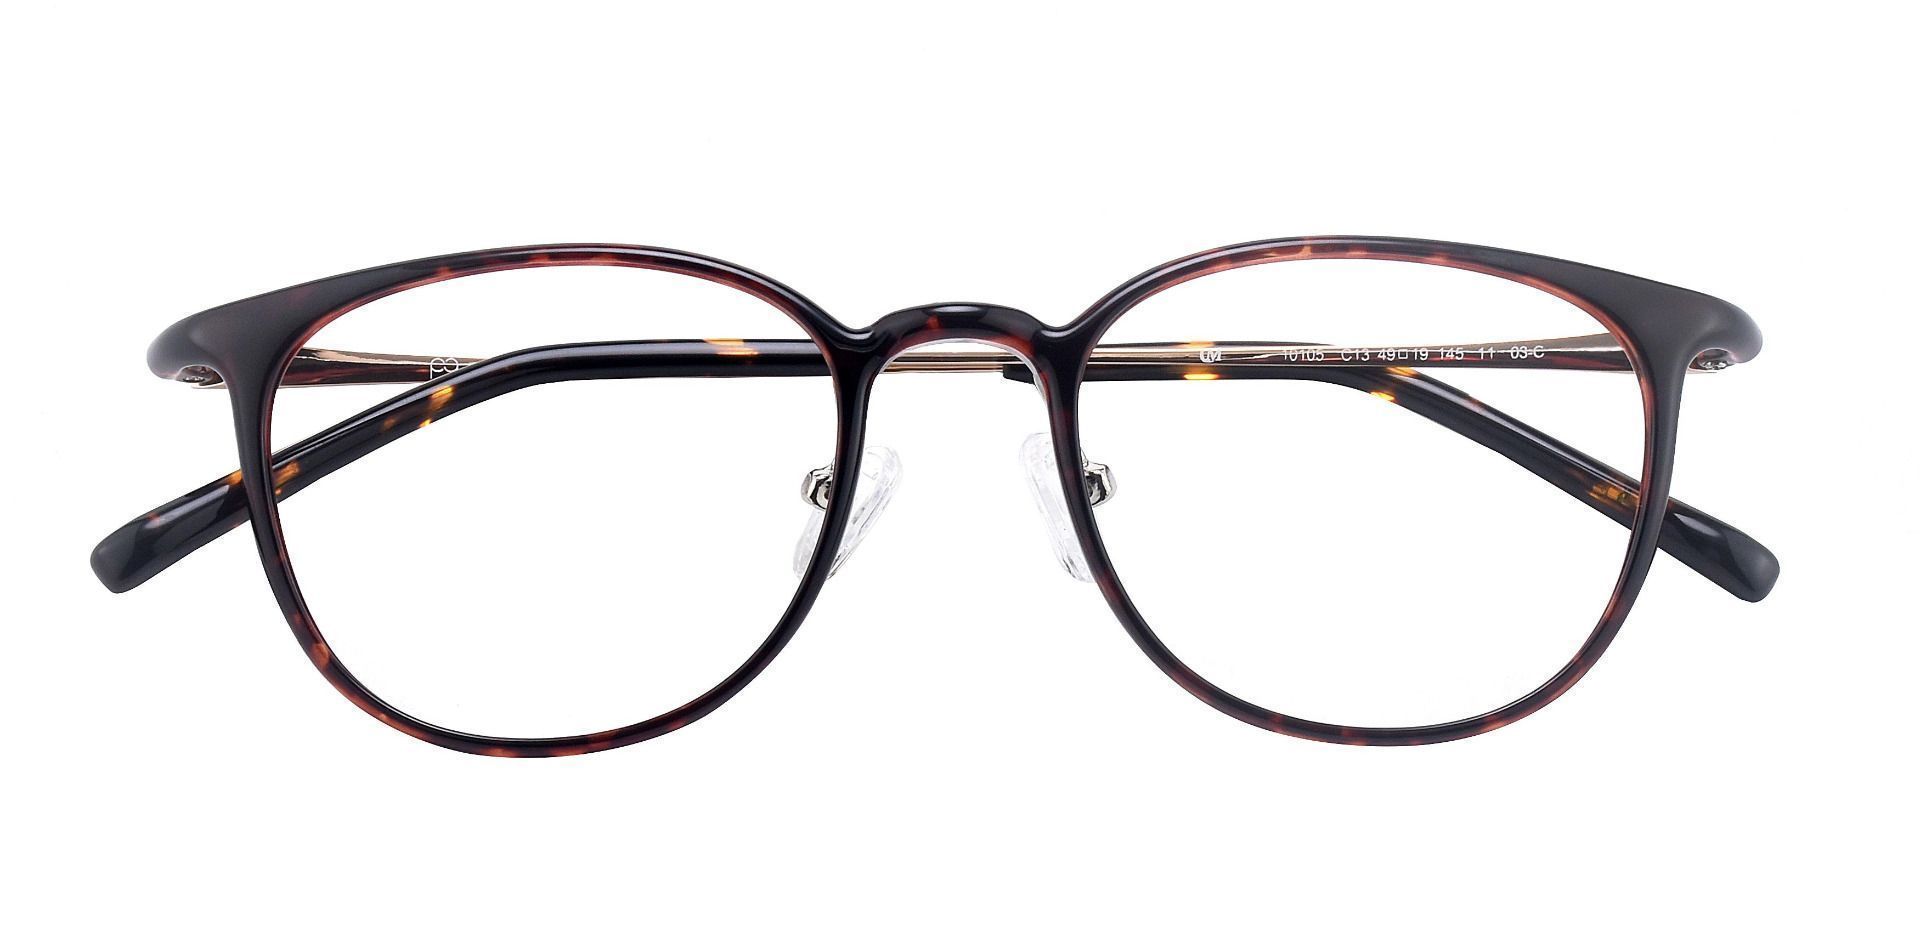 Stanton Oval Eyeglasses Frame - Tortoise